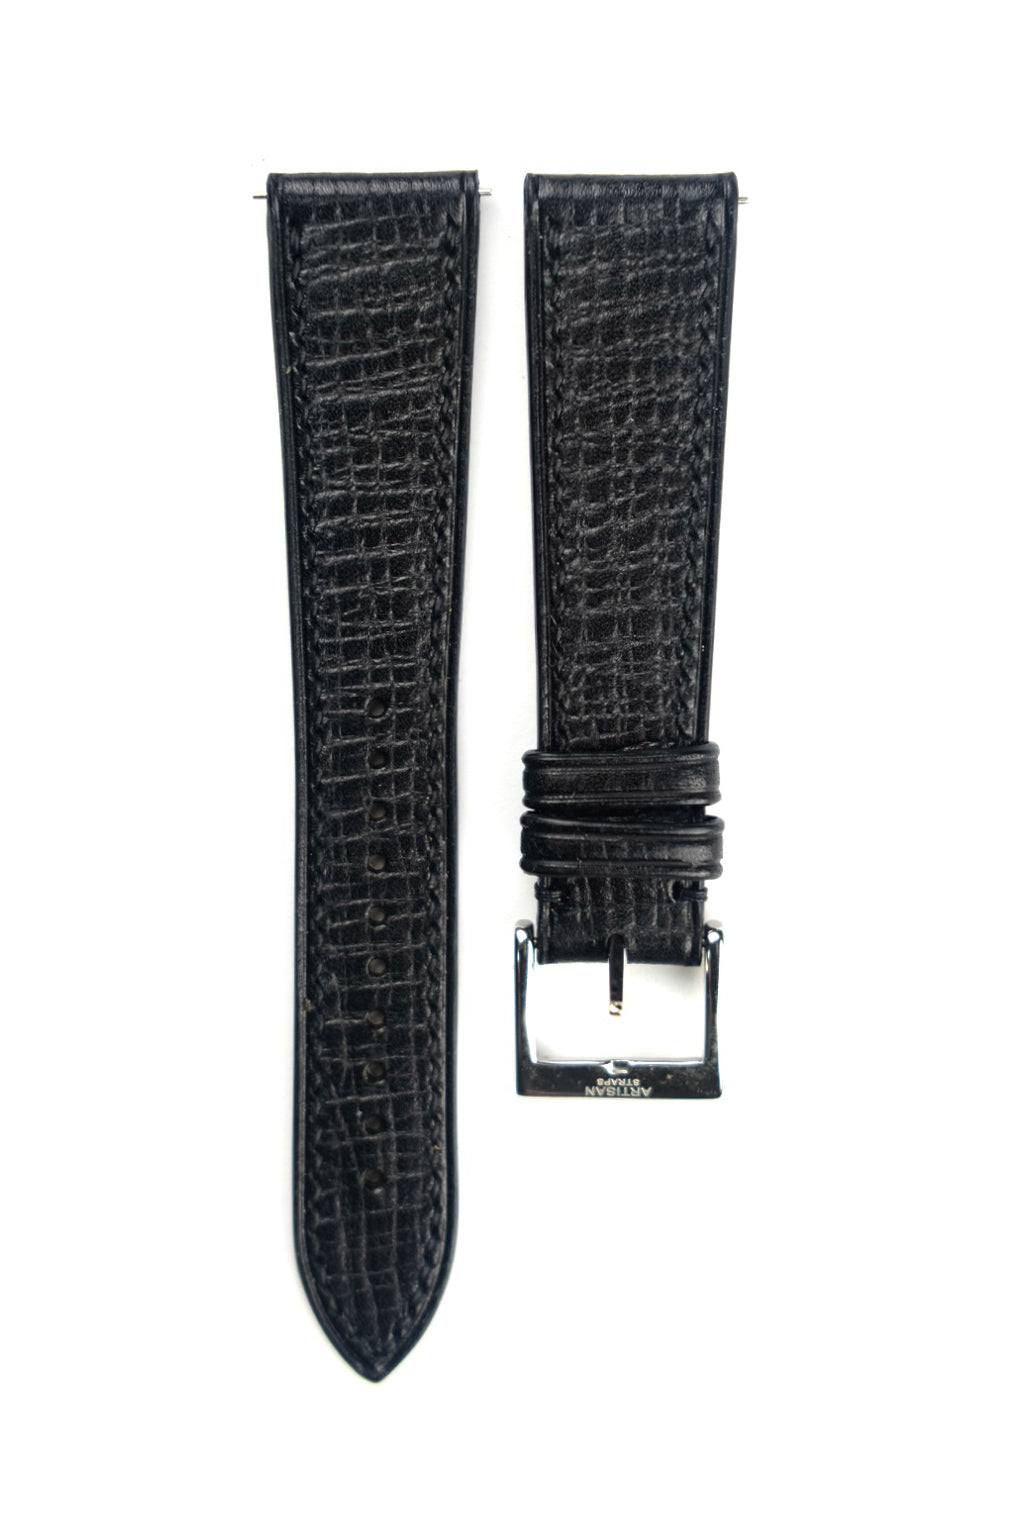 Black Palmer Leather Strap - Artisan Straps